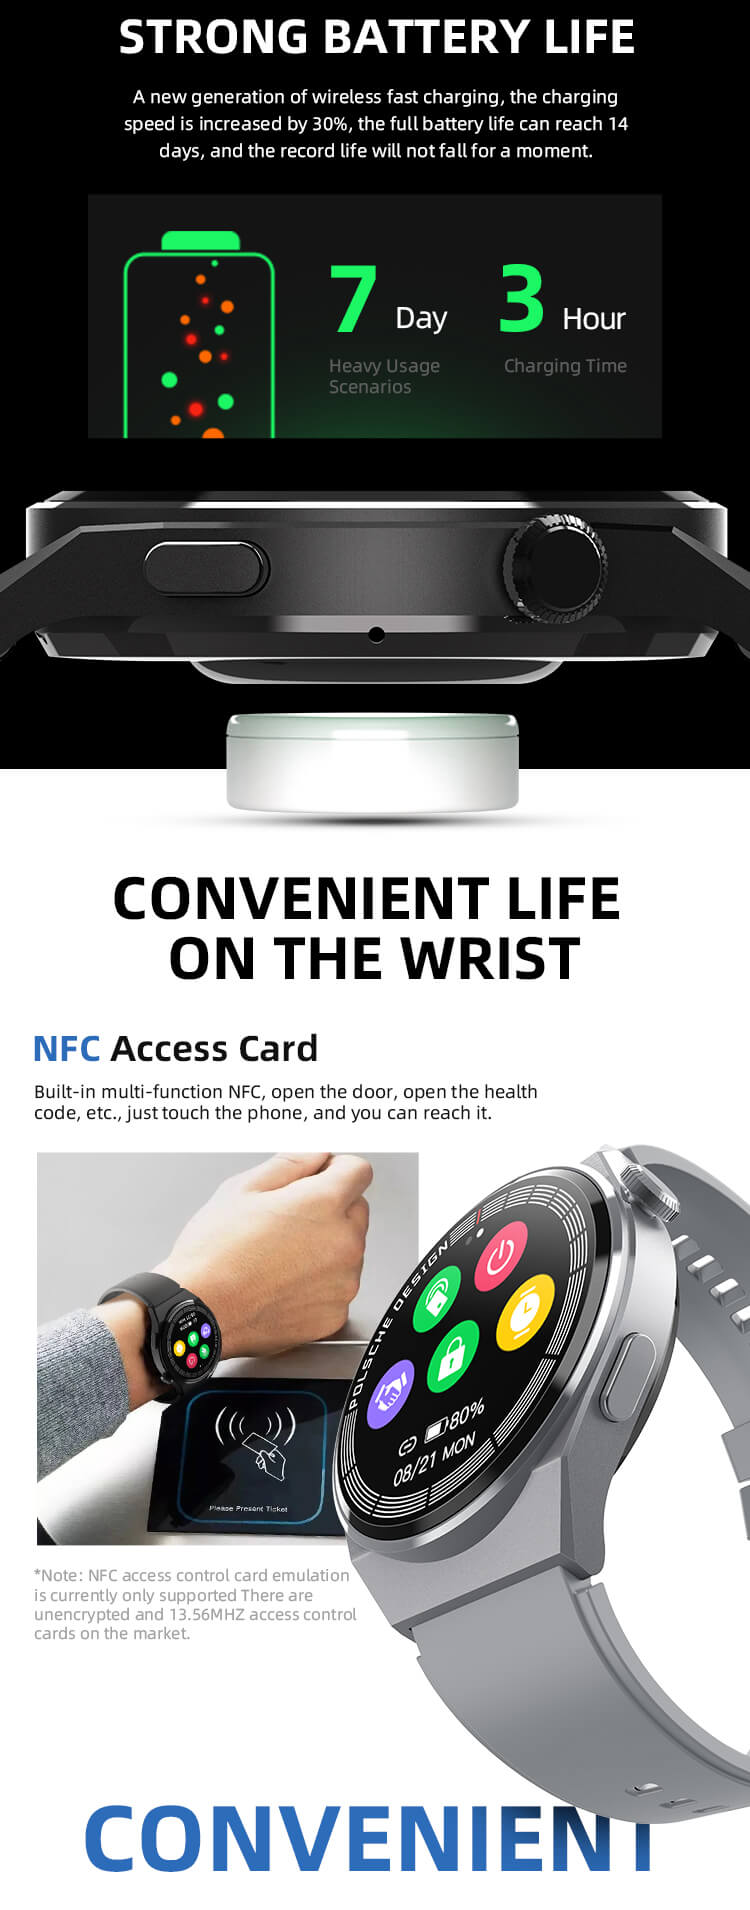 Nhà cung cấp đồng hồ thông minh sạc không dây NFC đa chức năng HW3 Max-Shengye Technology Co.,Ltd